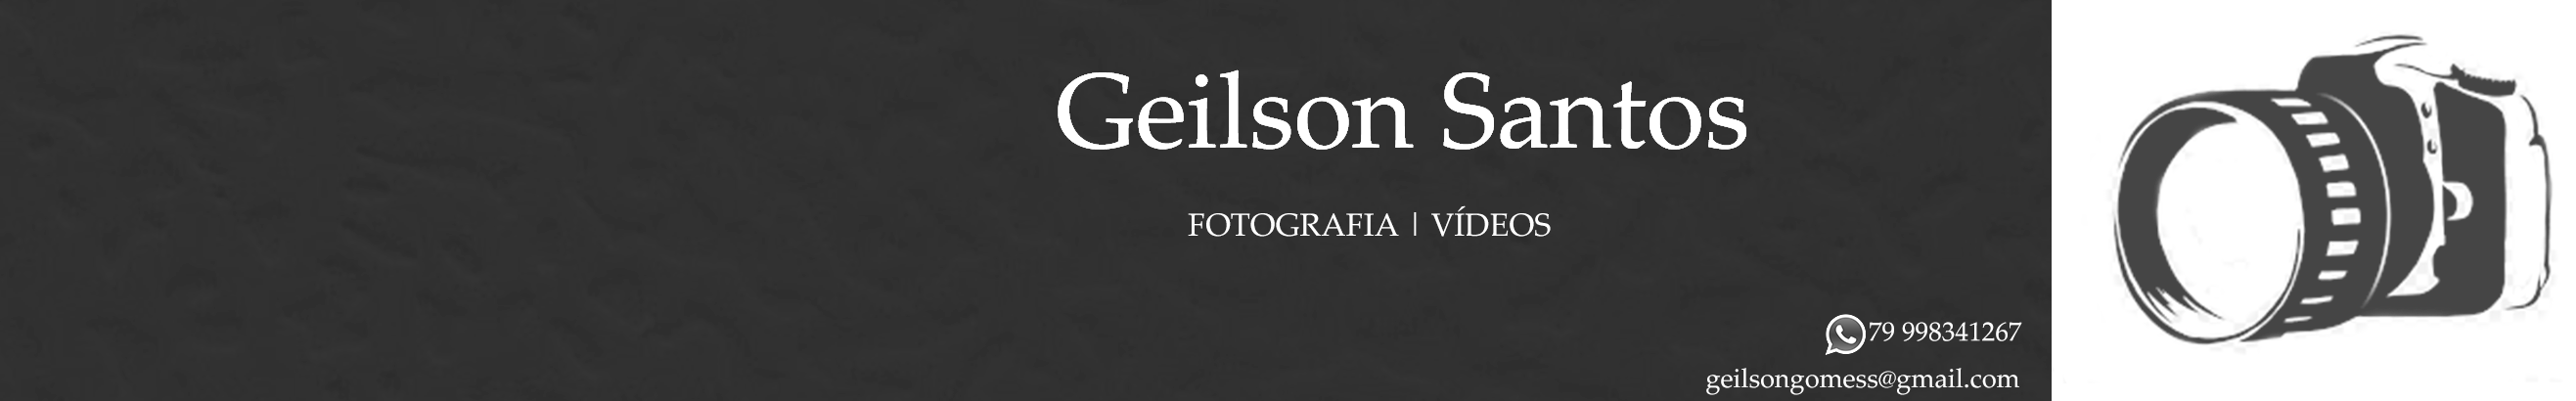 Geilson Santoss profilbanner